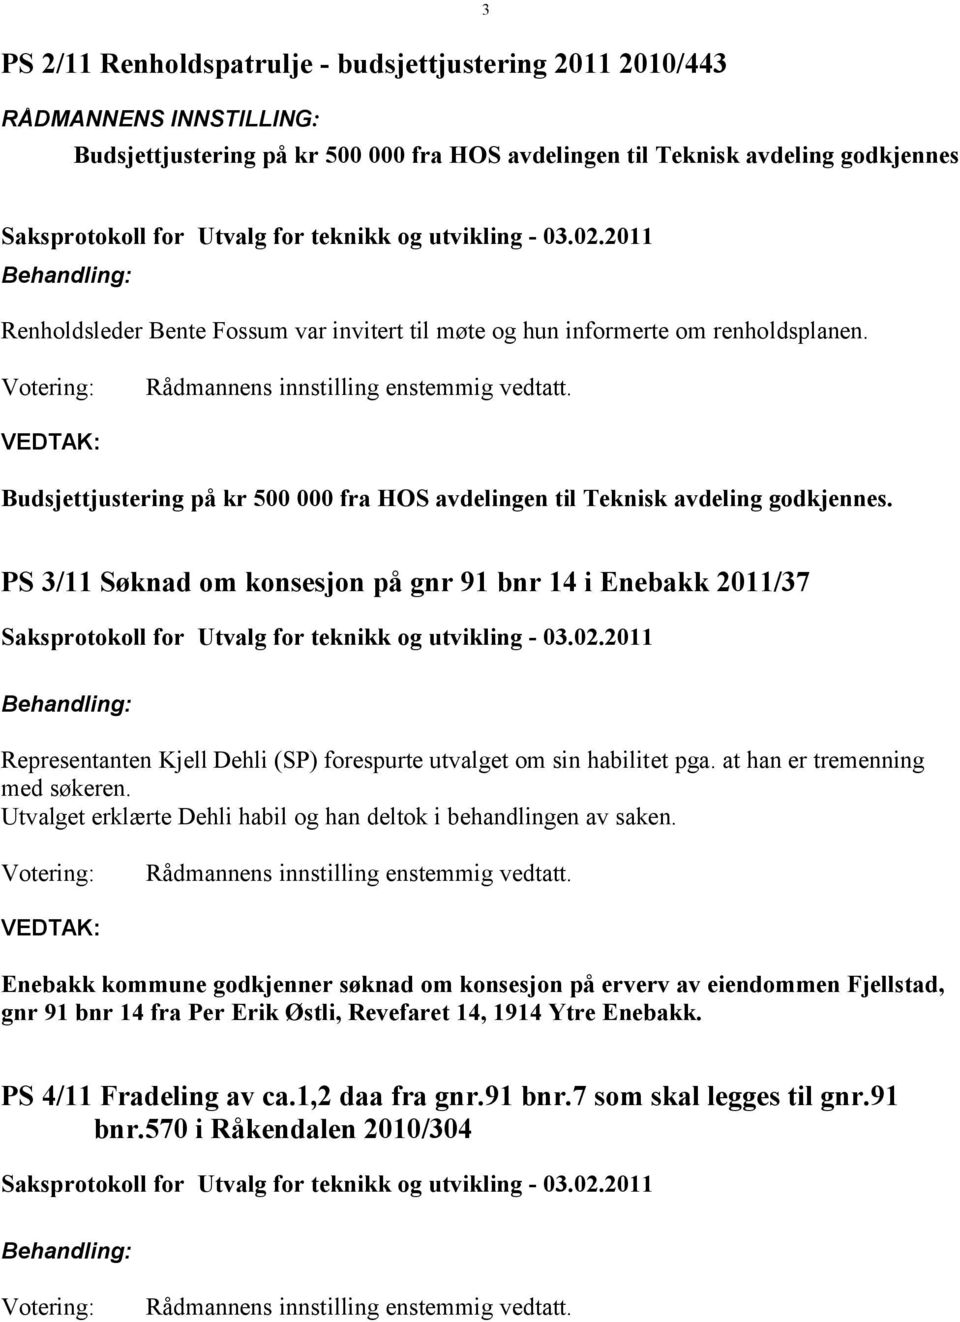 PS 3/11 Søknad om konsesjon på gnr 91 bnr 14 i Enebakk 2011/37 Representanten Kjell Dehli (SP) forespurte utvalget om sin habilitet pga. at han er tremenning med søkeren.